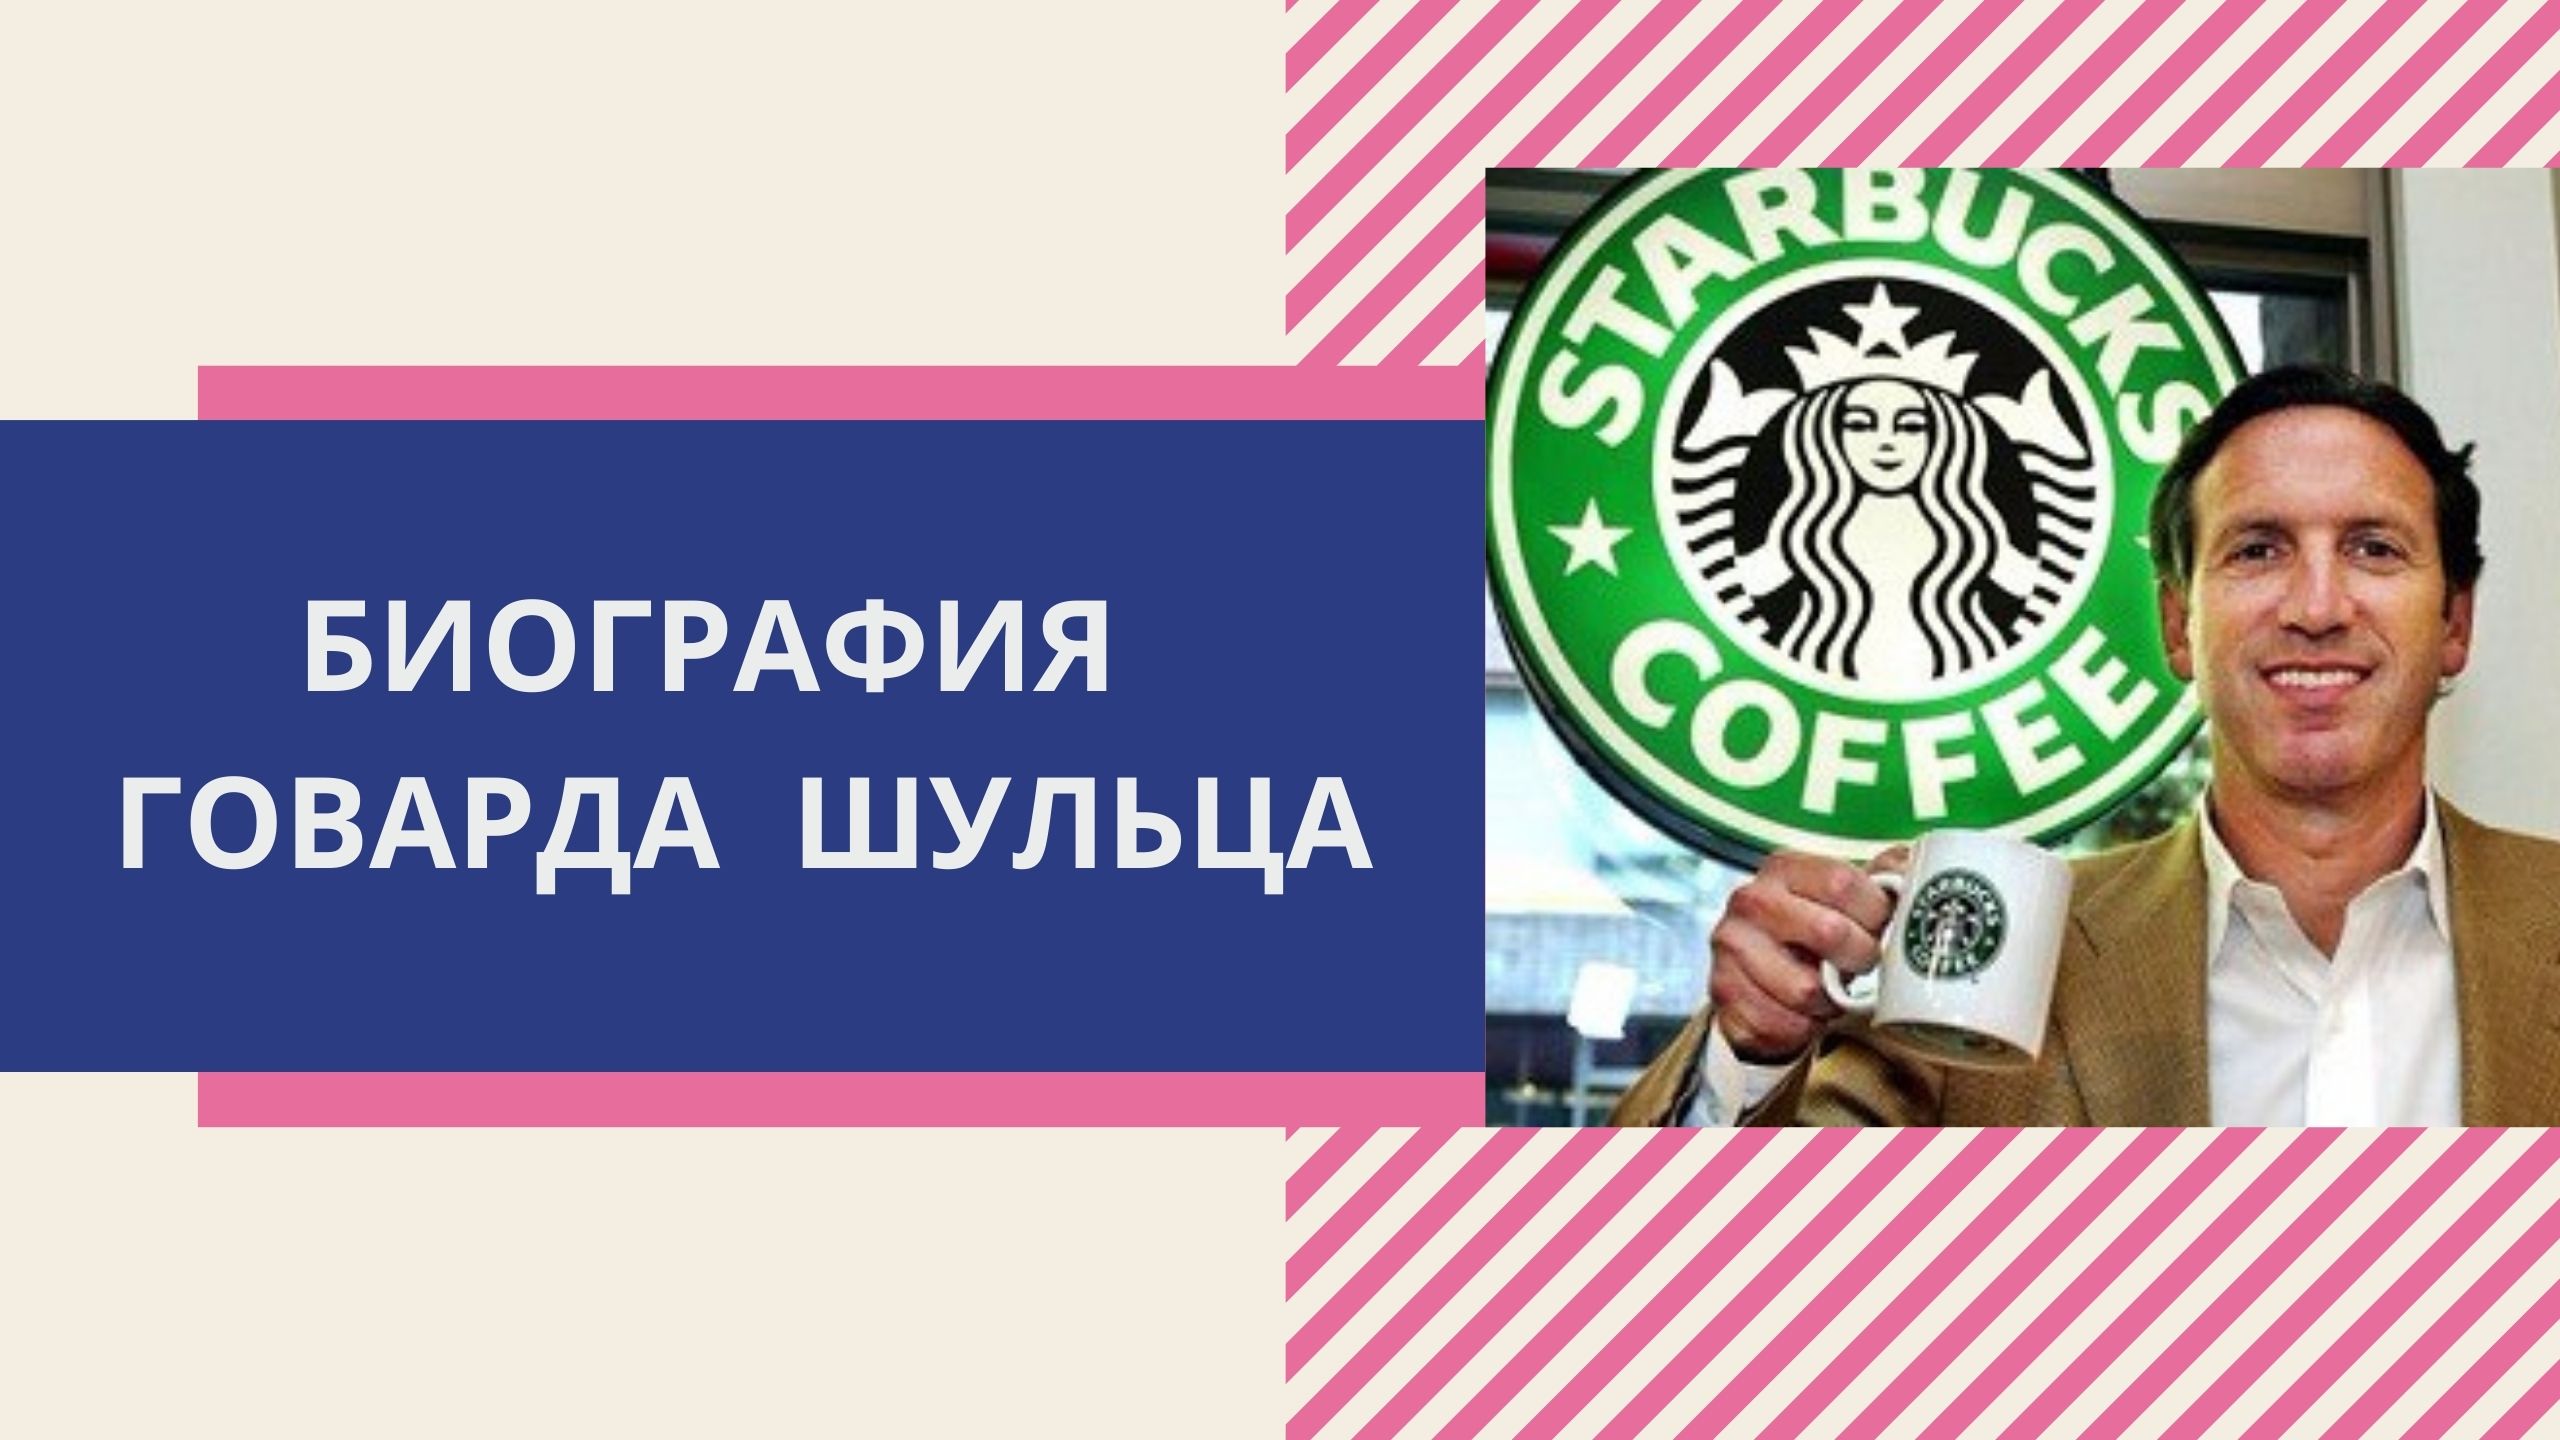 Биография Говарда Шульца, основателя Starbucks